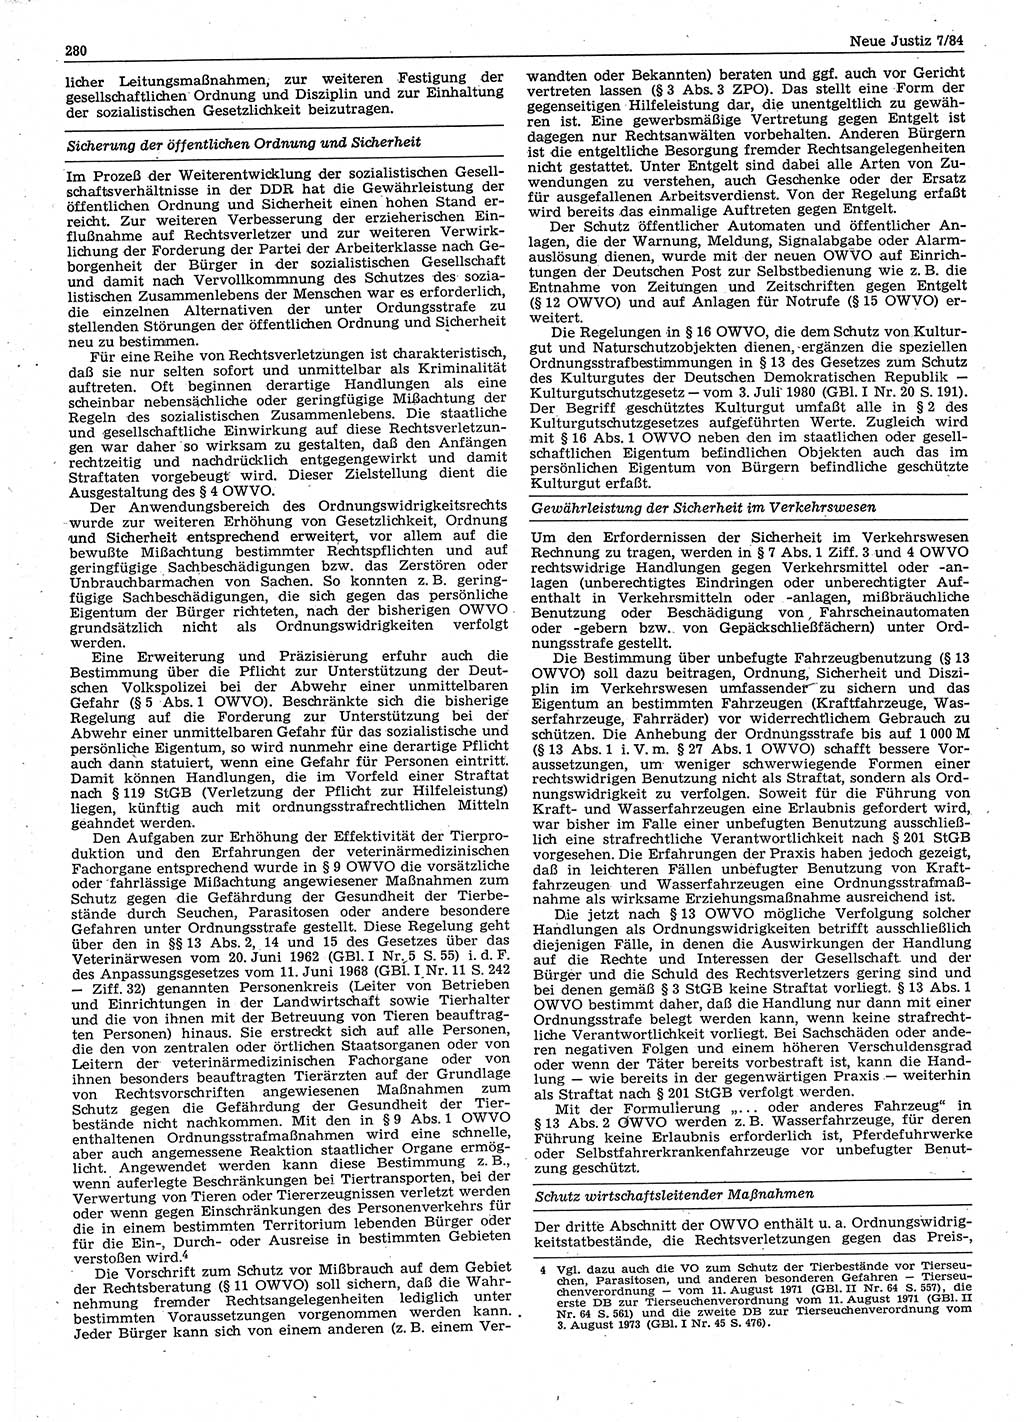 Neue Justiz (NJ), Zeitschrift für sozialistisches Recht und Gesetzlichkeit [Deutsche Demokratische Republik (DDR)], 38. Jahrgang 1984, Seite 280 (NJ DDR 1984, S. 280)